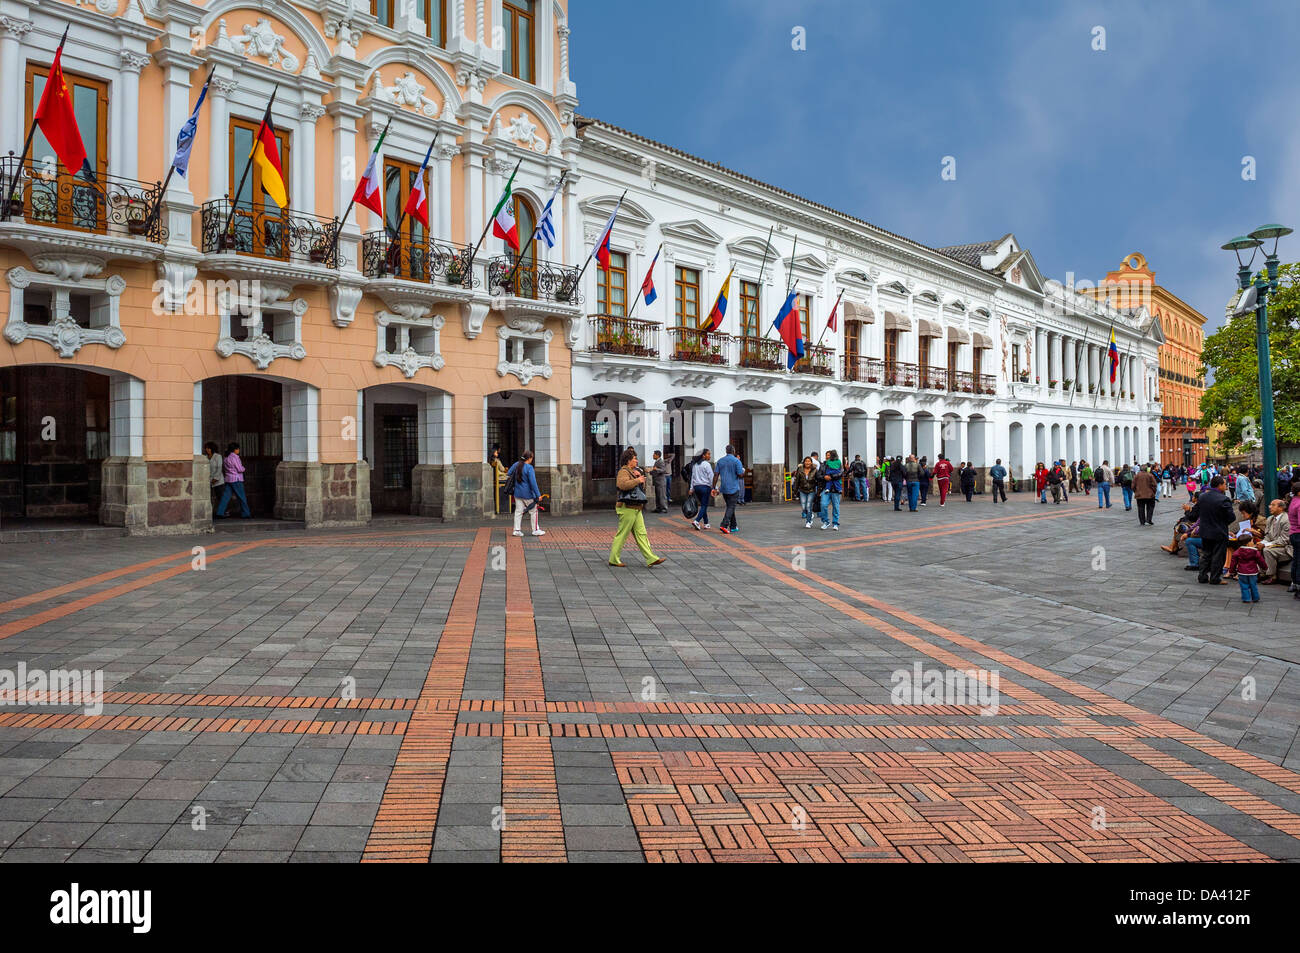 La place de l'indépendance, Quito, Équateur, la province de Pichincha Banque D'Images